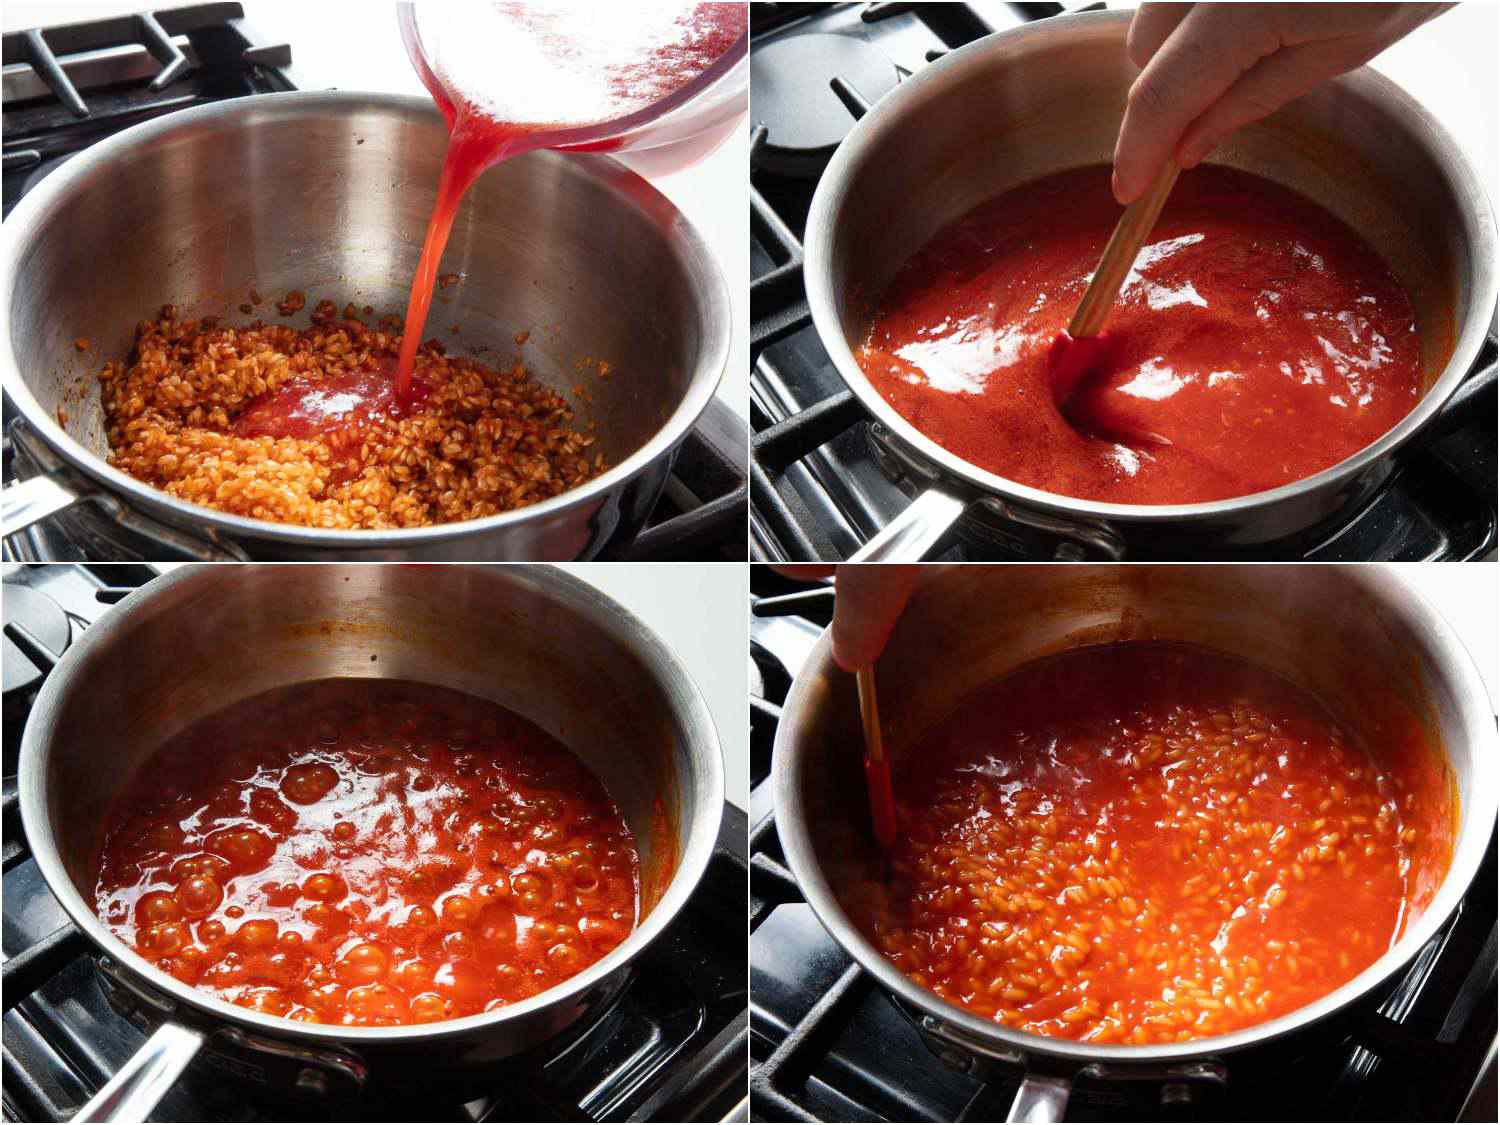 20190903-pomodoro-al-riso-joel-russo-adding-sauce